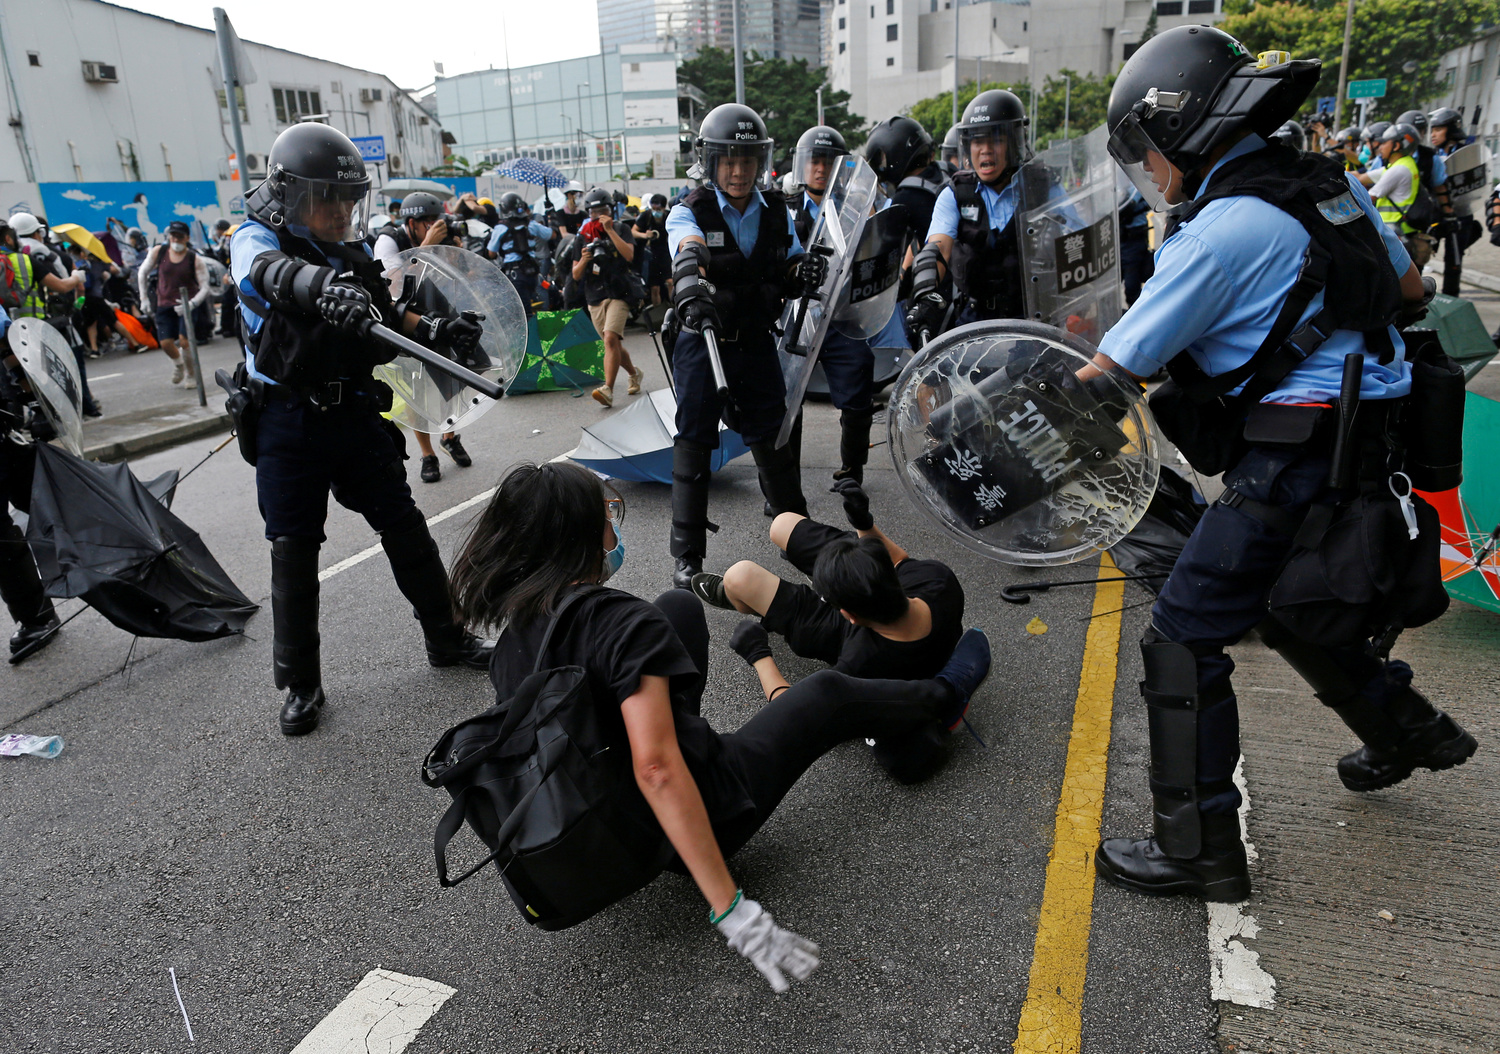 Sale la tensione a Hong Kong, l’allarme di Pechino